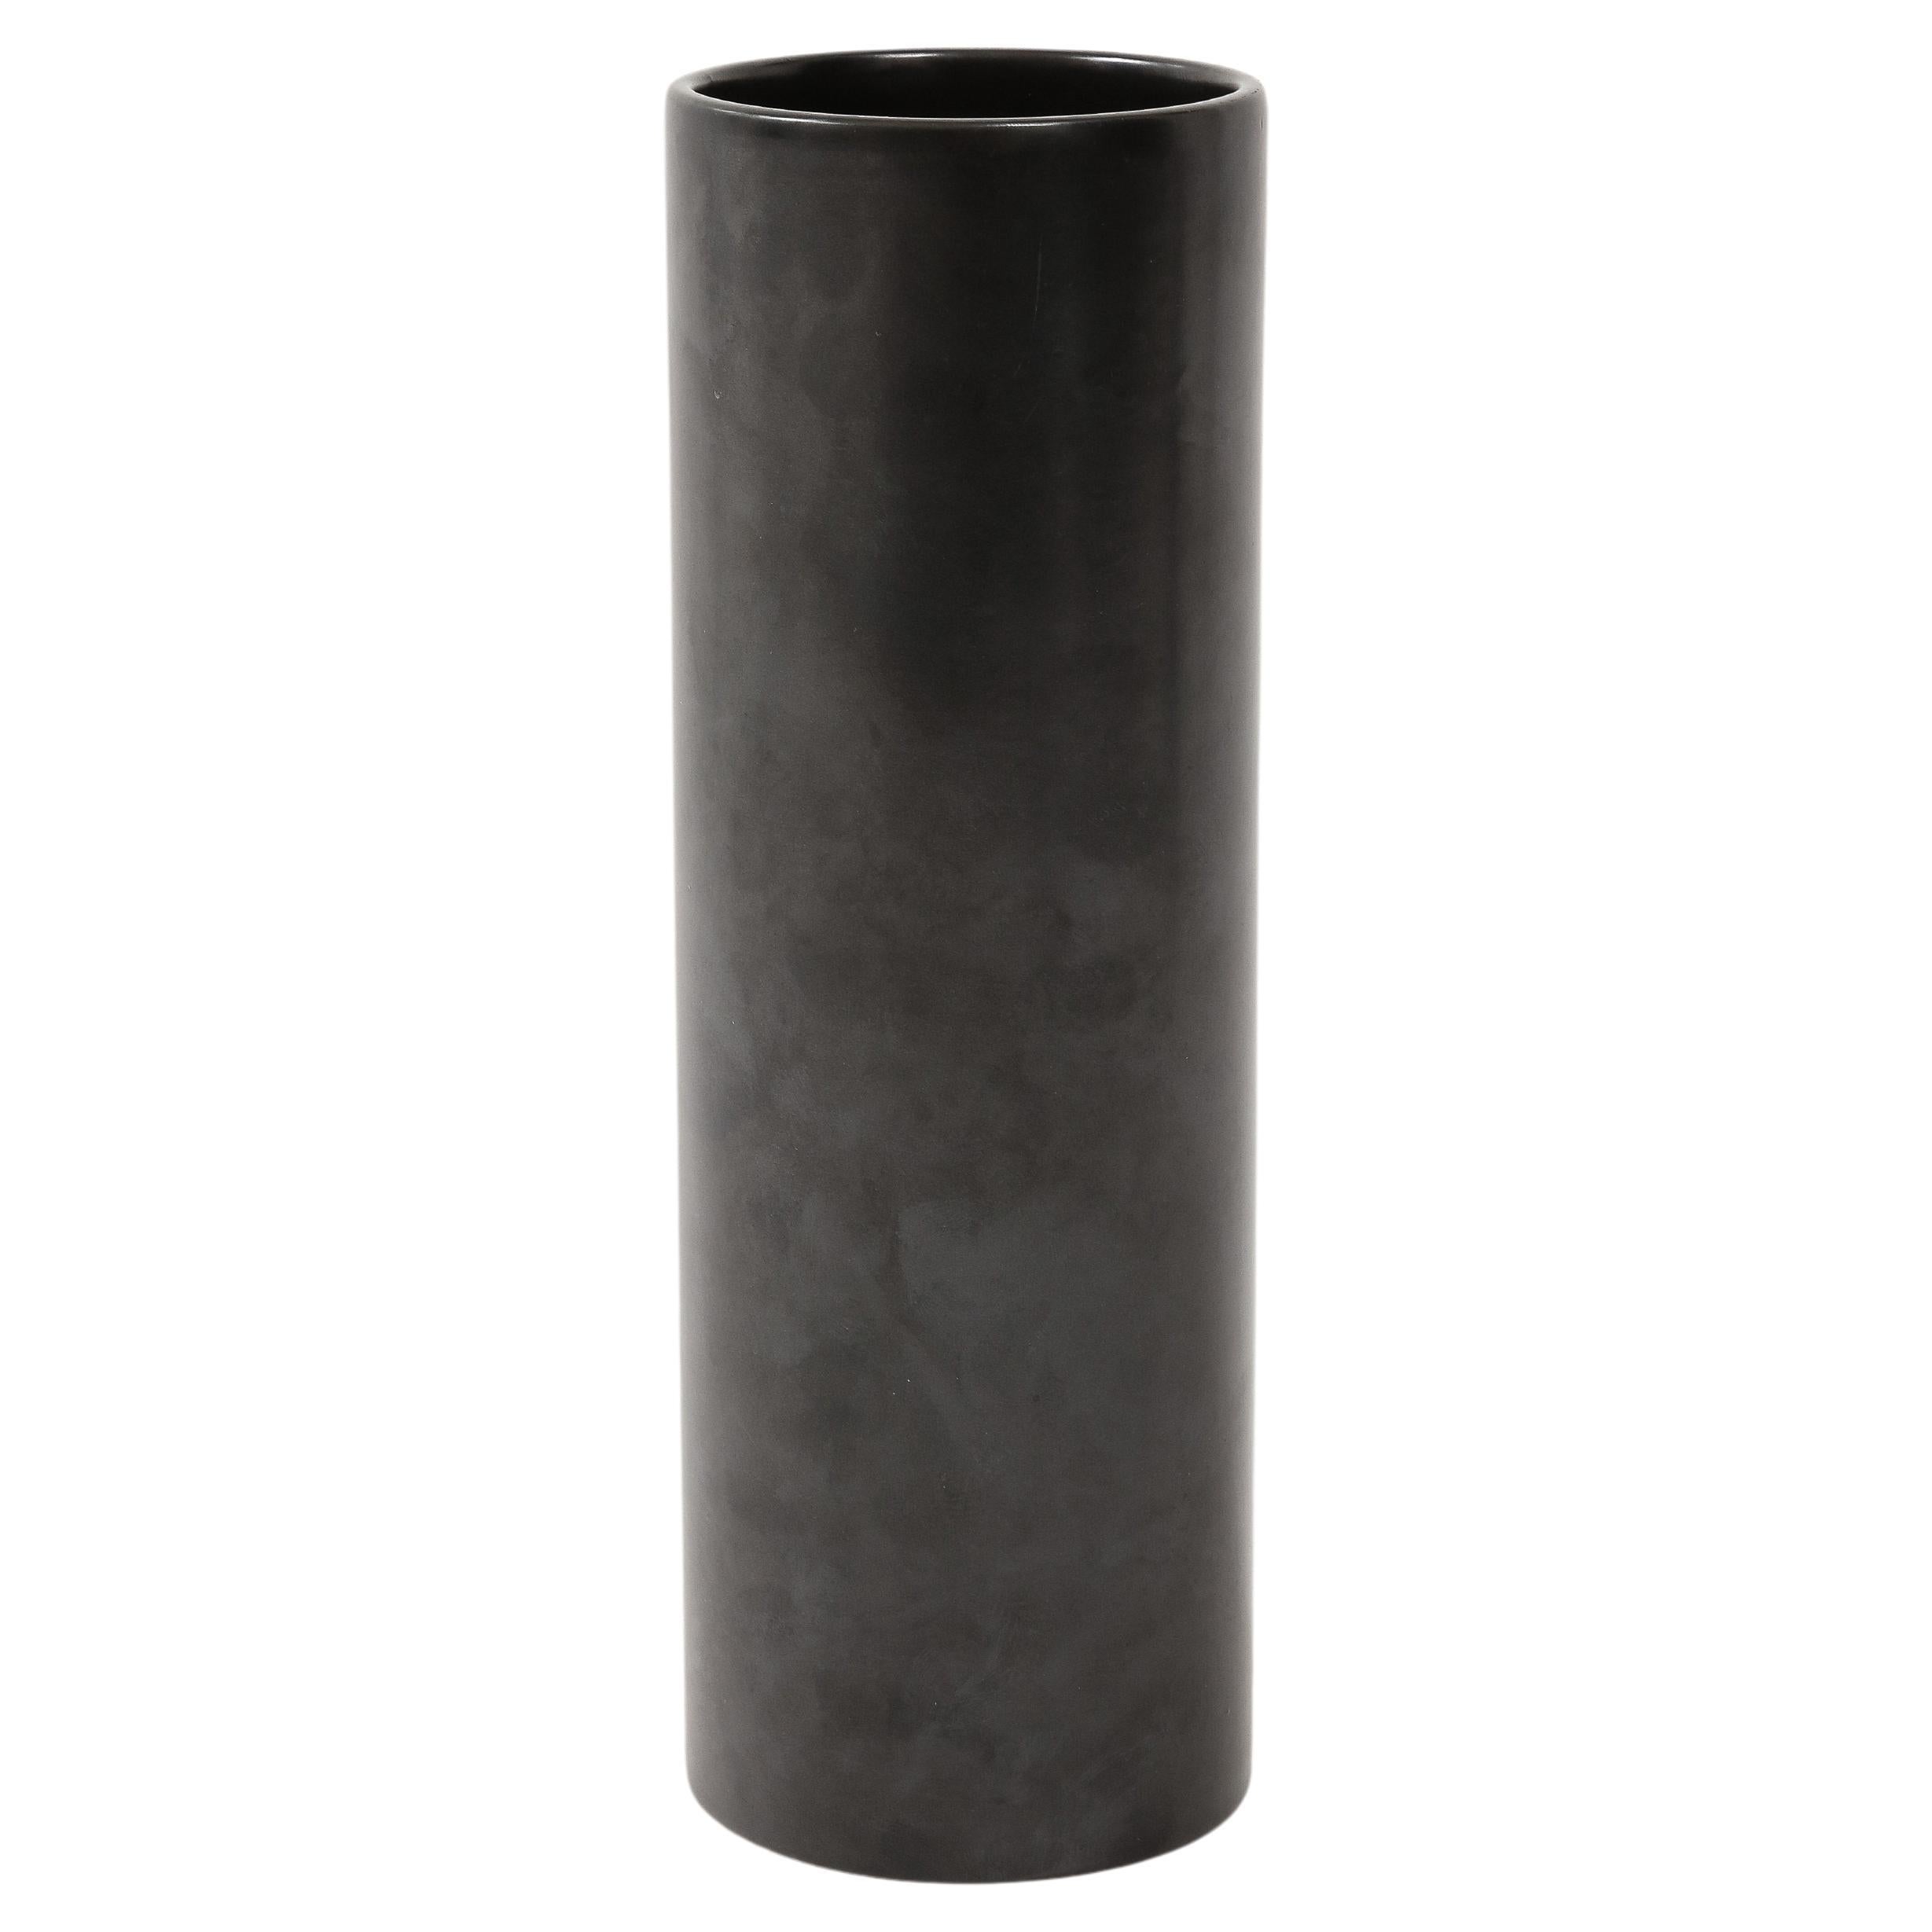 Large Georges Jouve Style Black Matte Cylinder Vase, France, c. 1950's For Sale